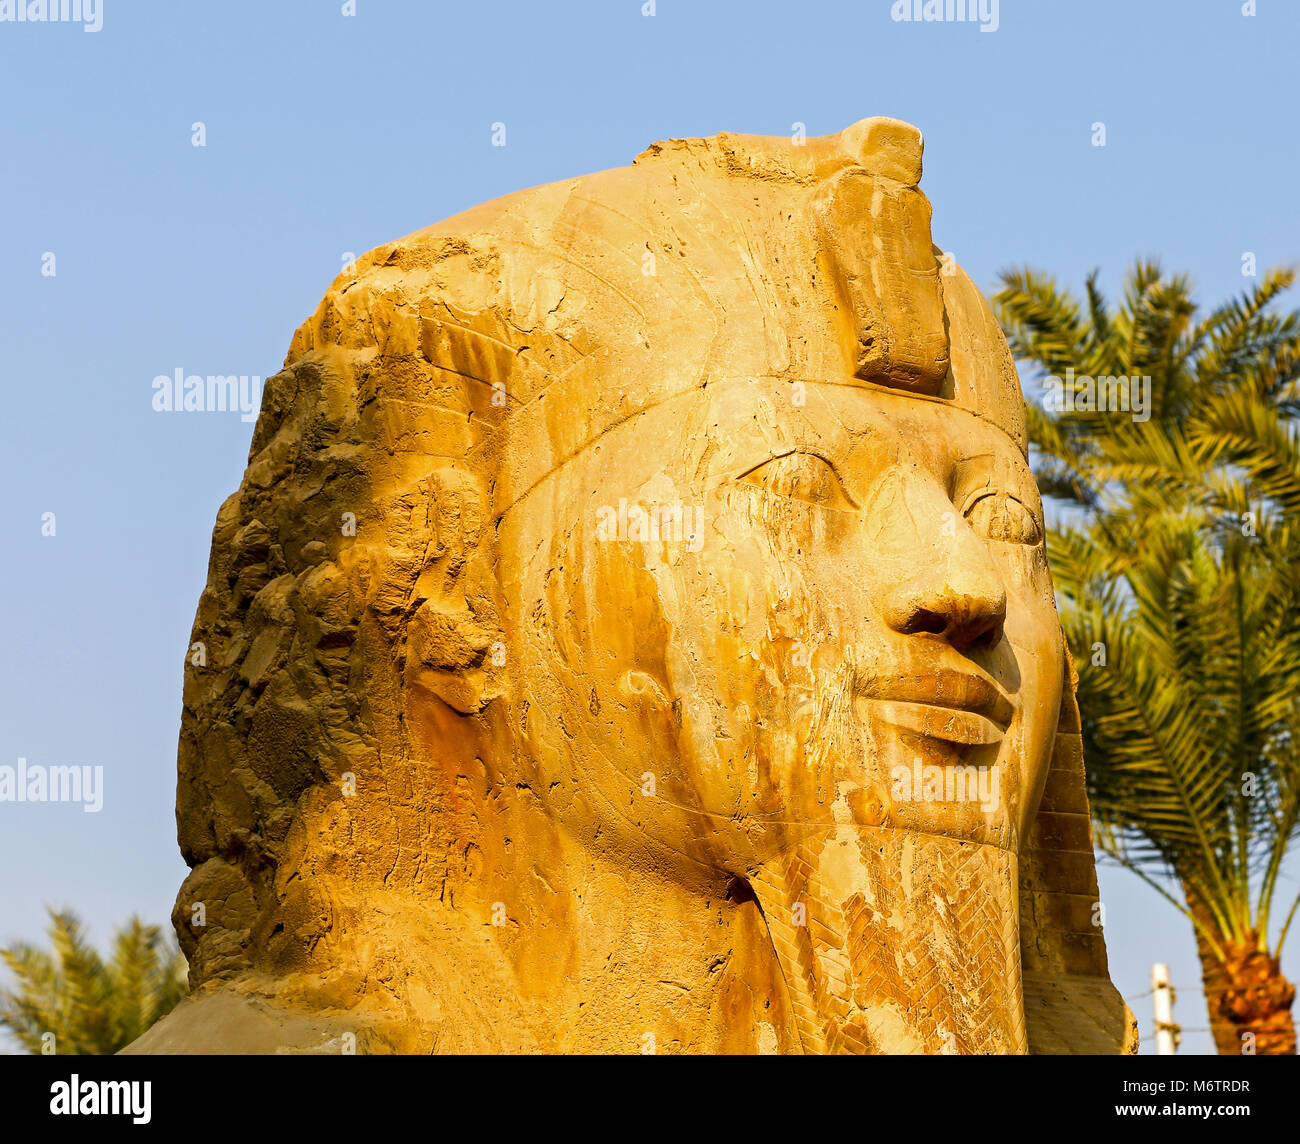 Le Sphinx de Memphis, faits d'Albâtre égyptien, Memphis, l'Égypte, l'Afrique du Nord Banque D'Images